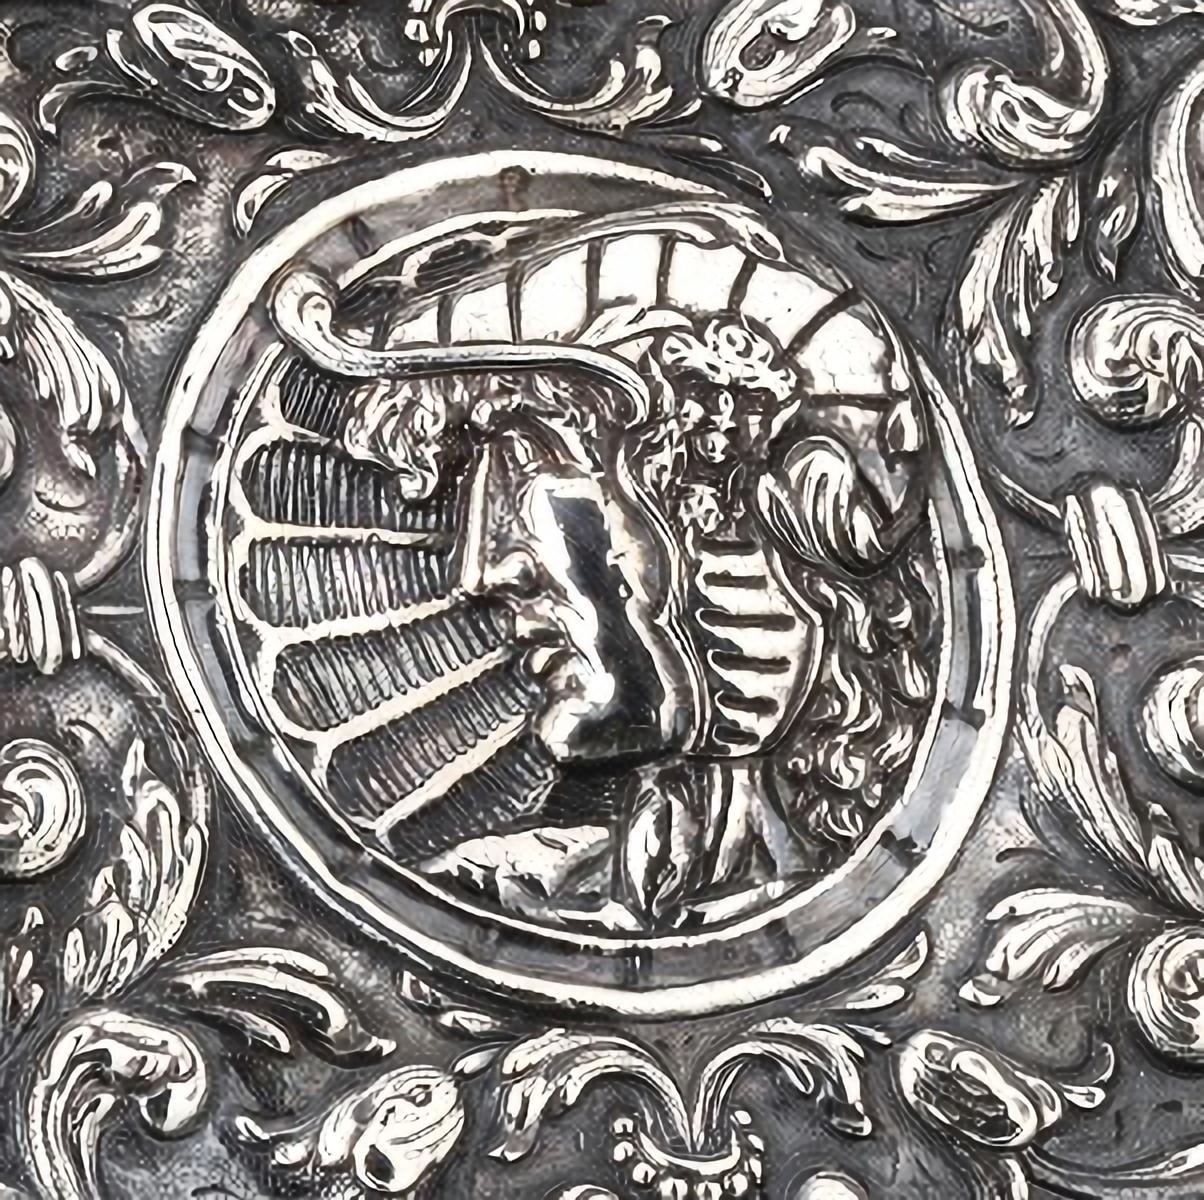 Großer ovaler langer Teller aus Silber
Holland, in Silber, 19. Jahrhundert
Mit gewelltem Rand, mit Reserven an klassischen Figuren und Pflanzenelementen. Silberne Markierungen 